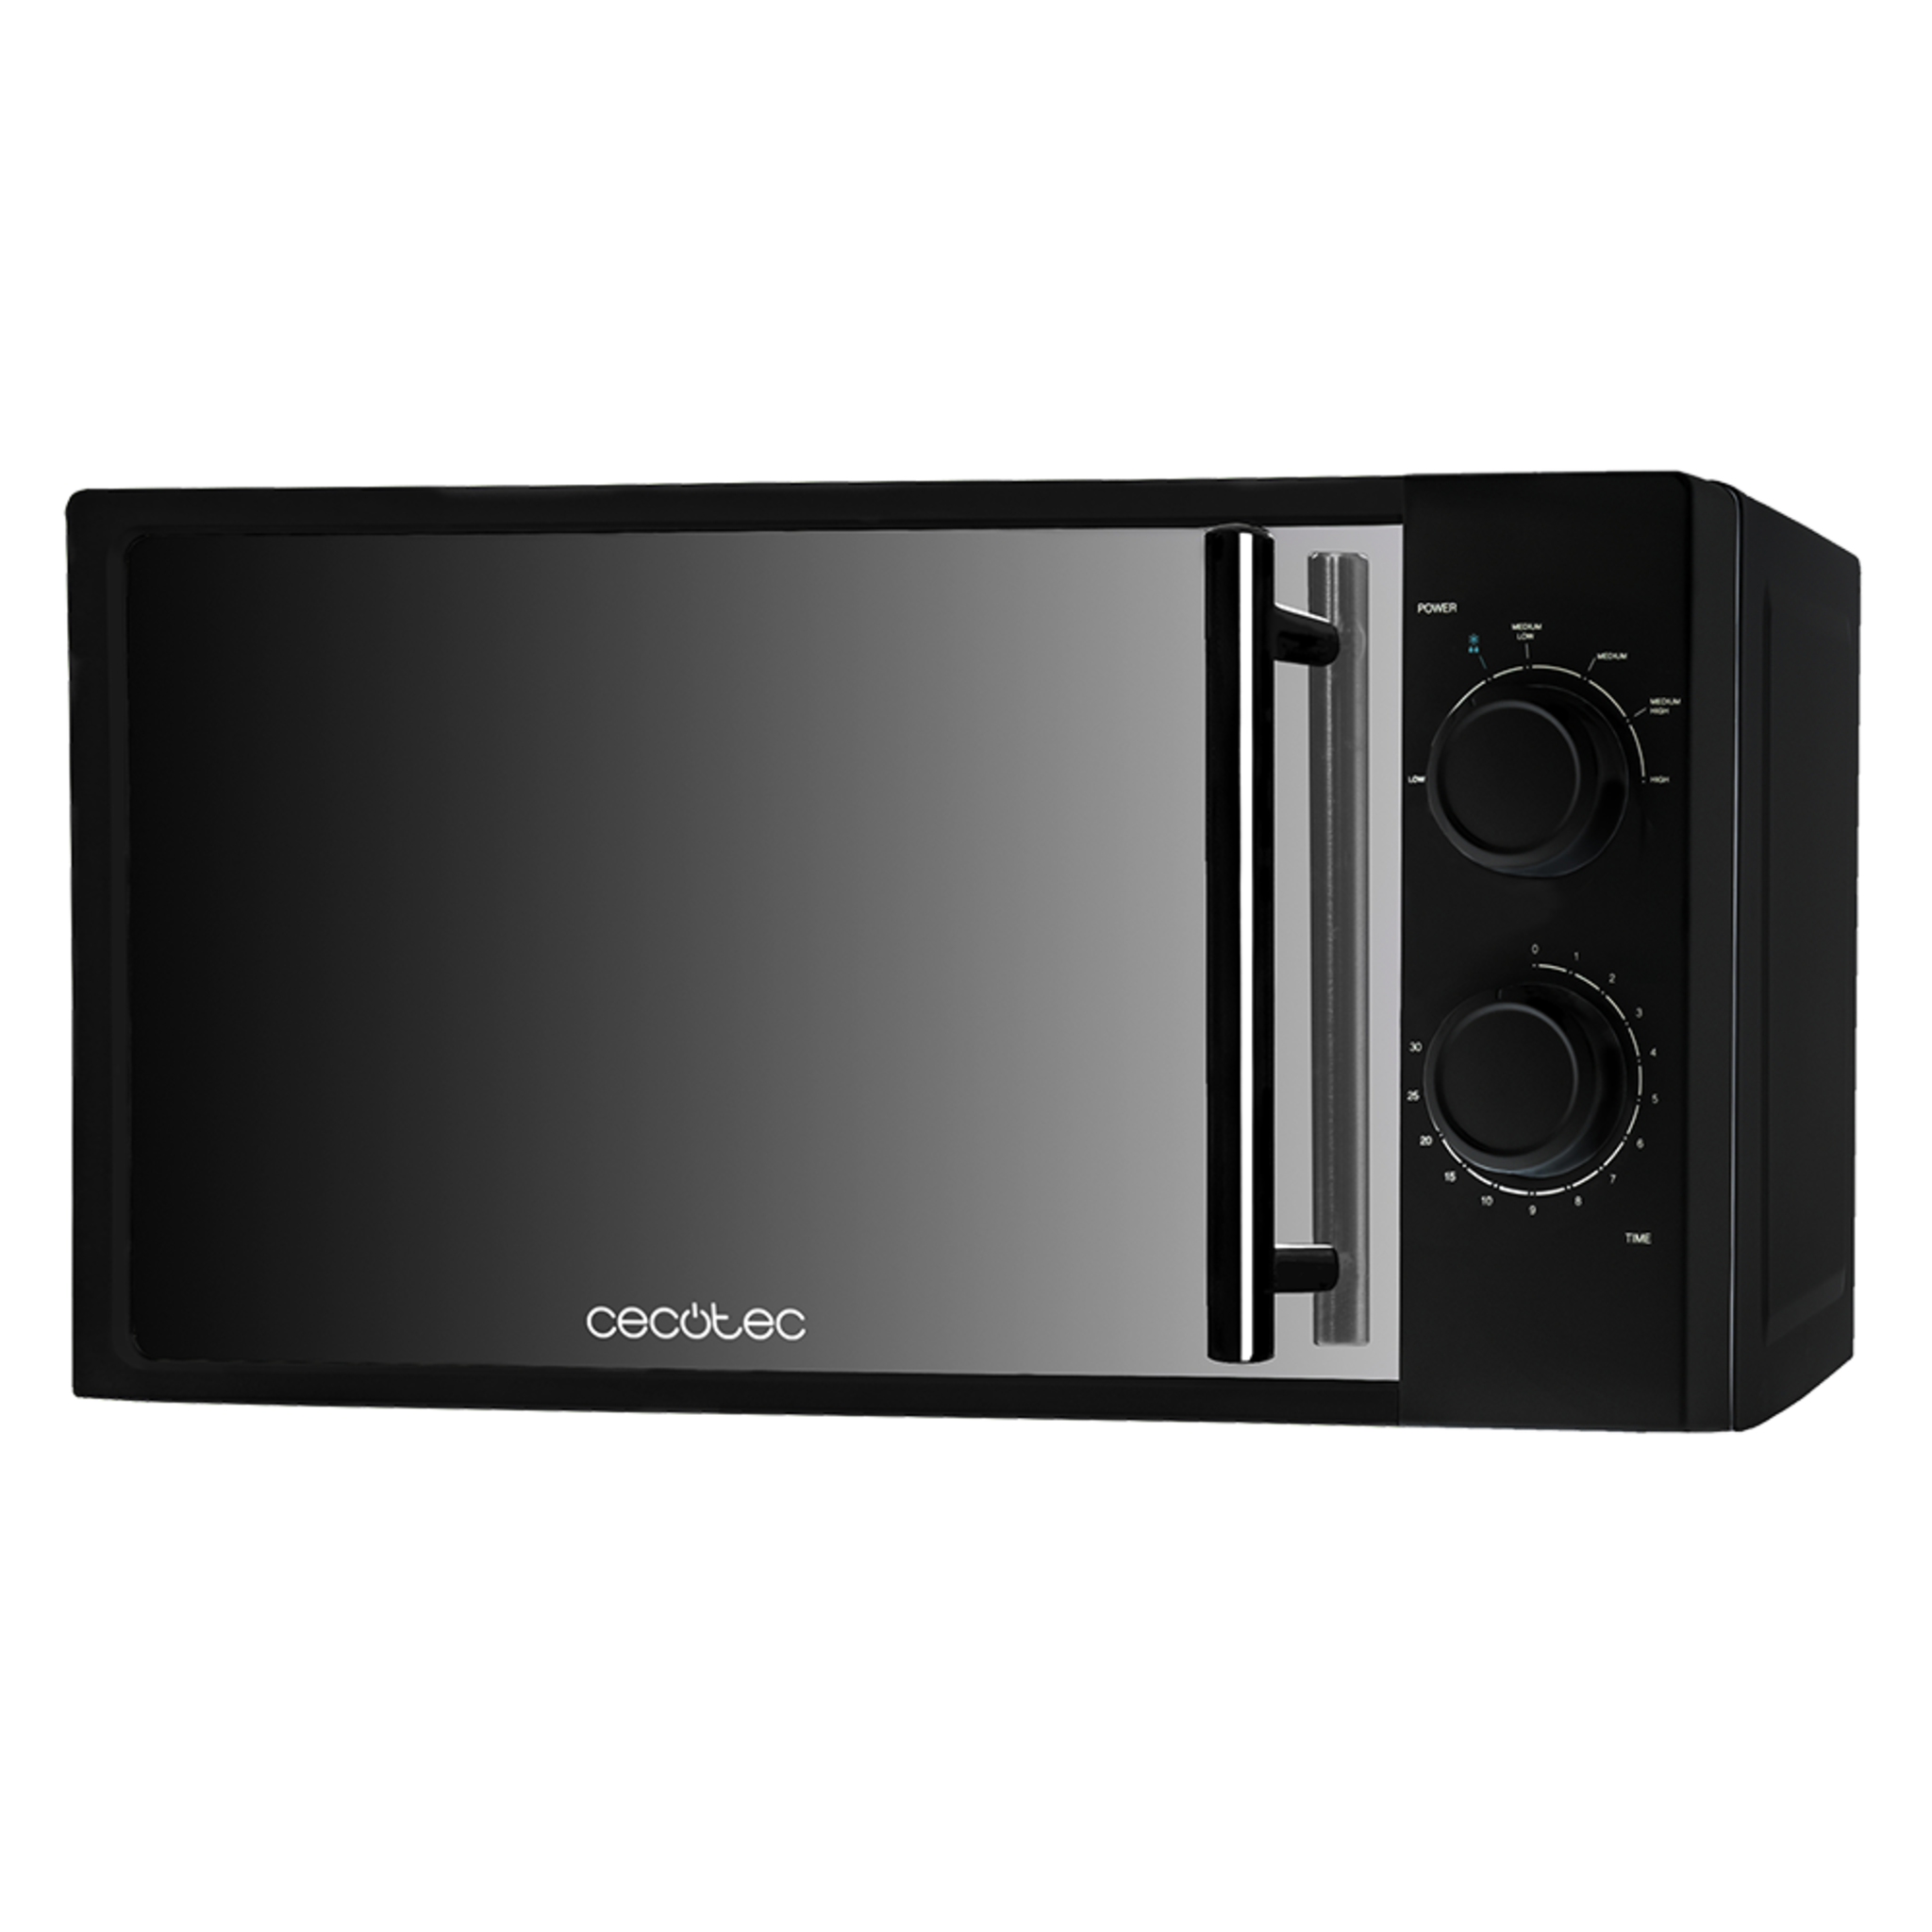 Micro-ondes All Black. 700 W de puissance, 20 L de capacité, 6 niveaux de puissance, minuterie jusqu'à 30 minutes, mode Décongeler et finition miroir